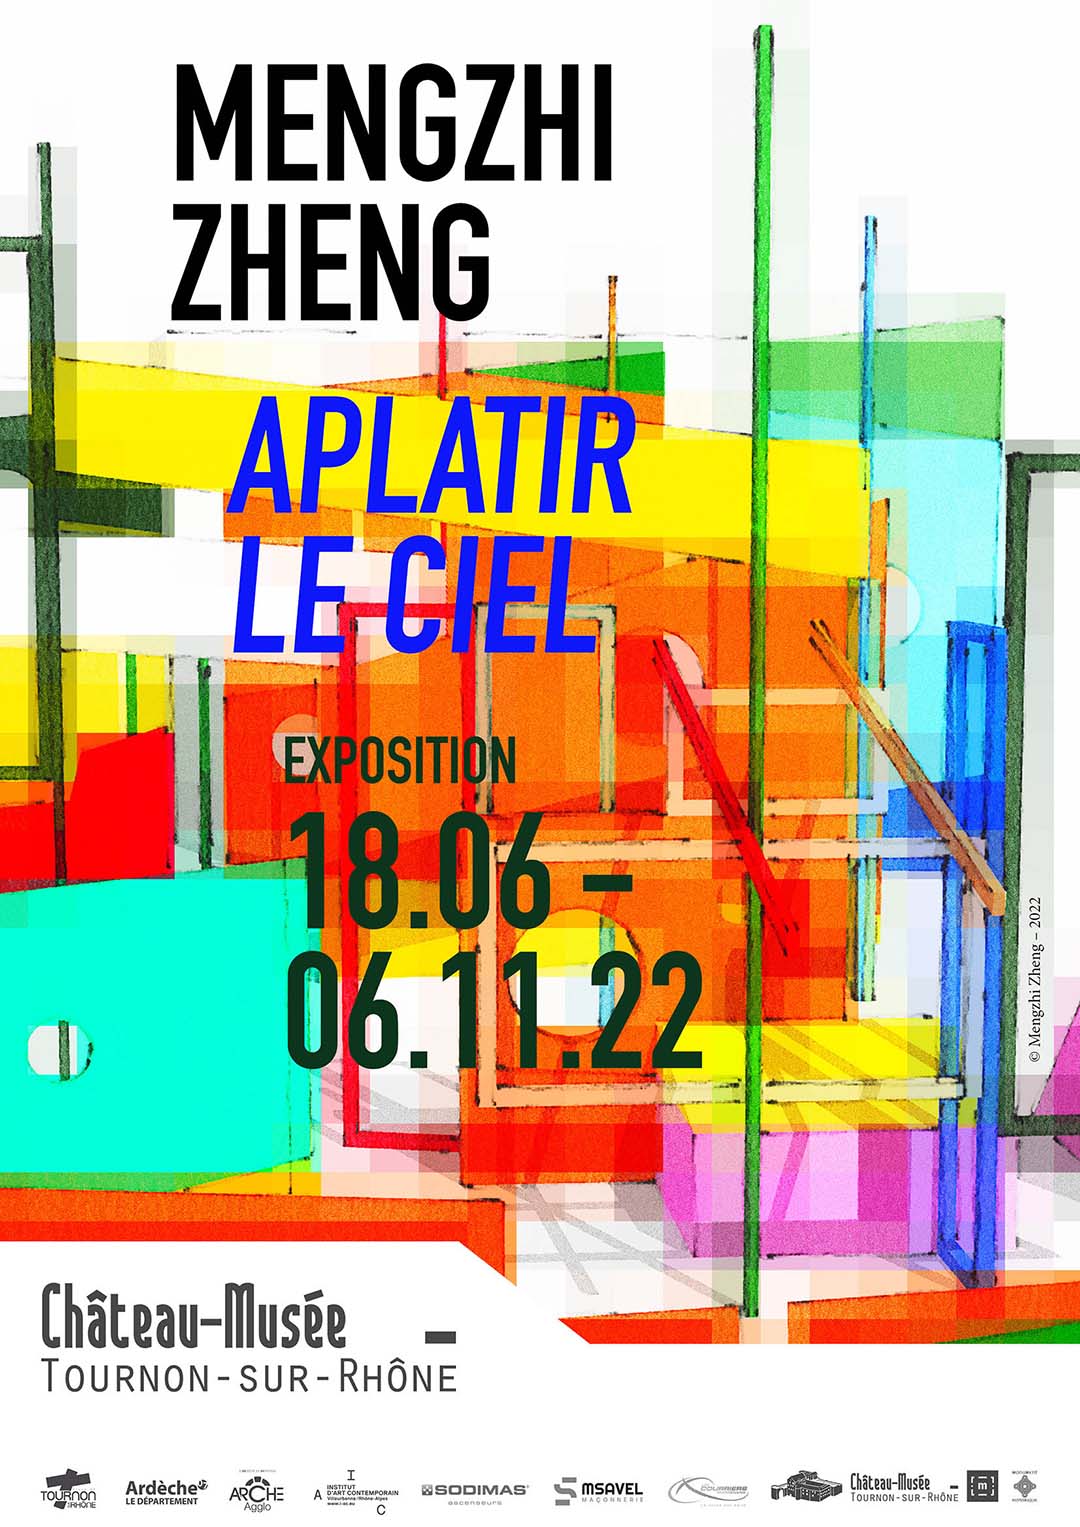 APLATIR LE CIEL. Exposition de Mengzhi Eheng. Du 18 juin au 6 novembre 2022 au Château-musée de Tournon-sur-Rhône.